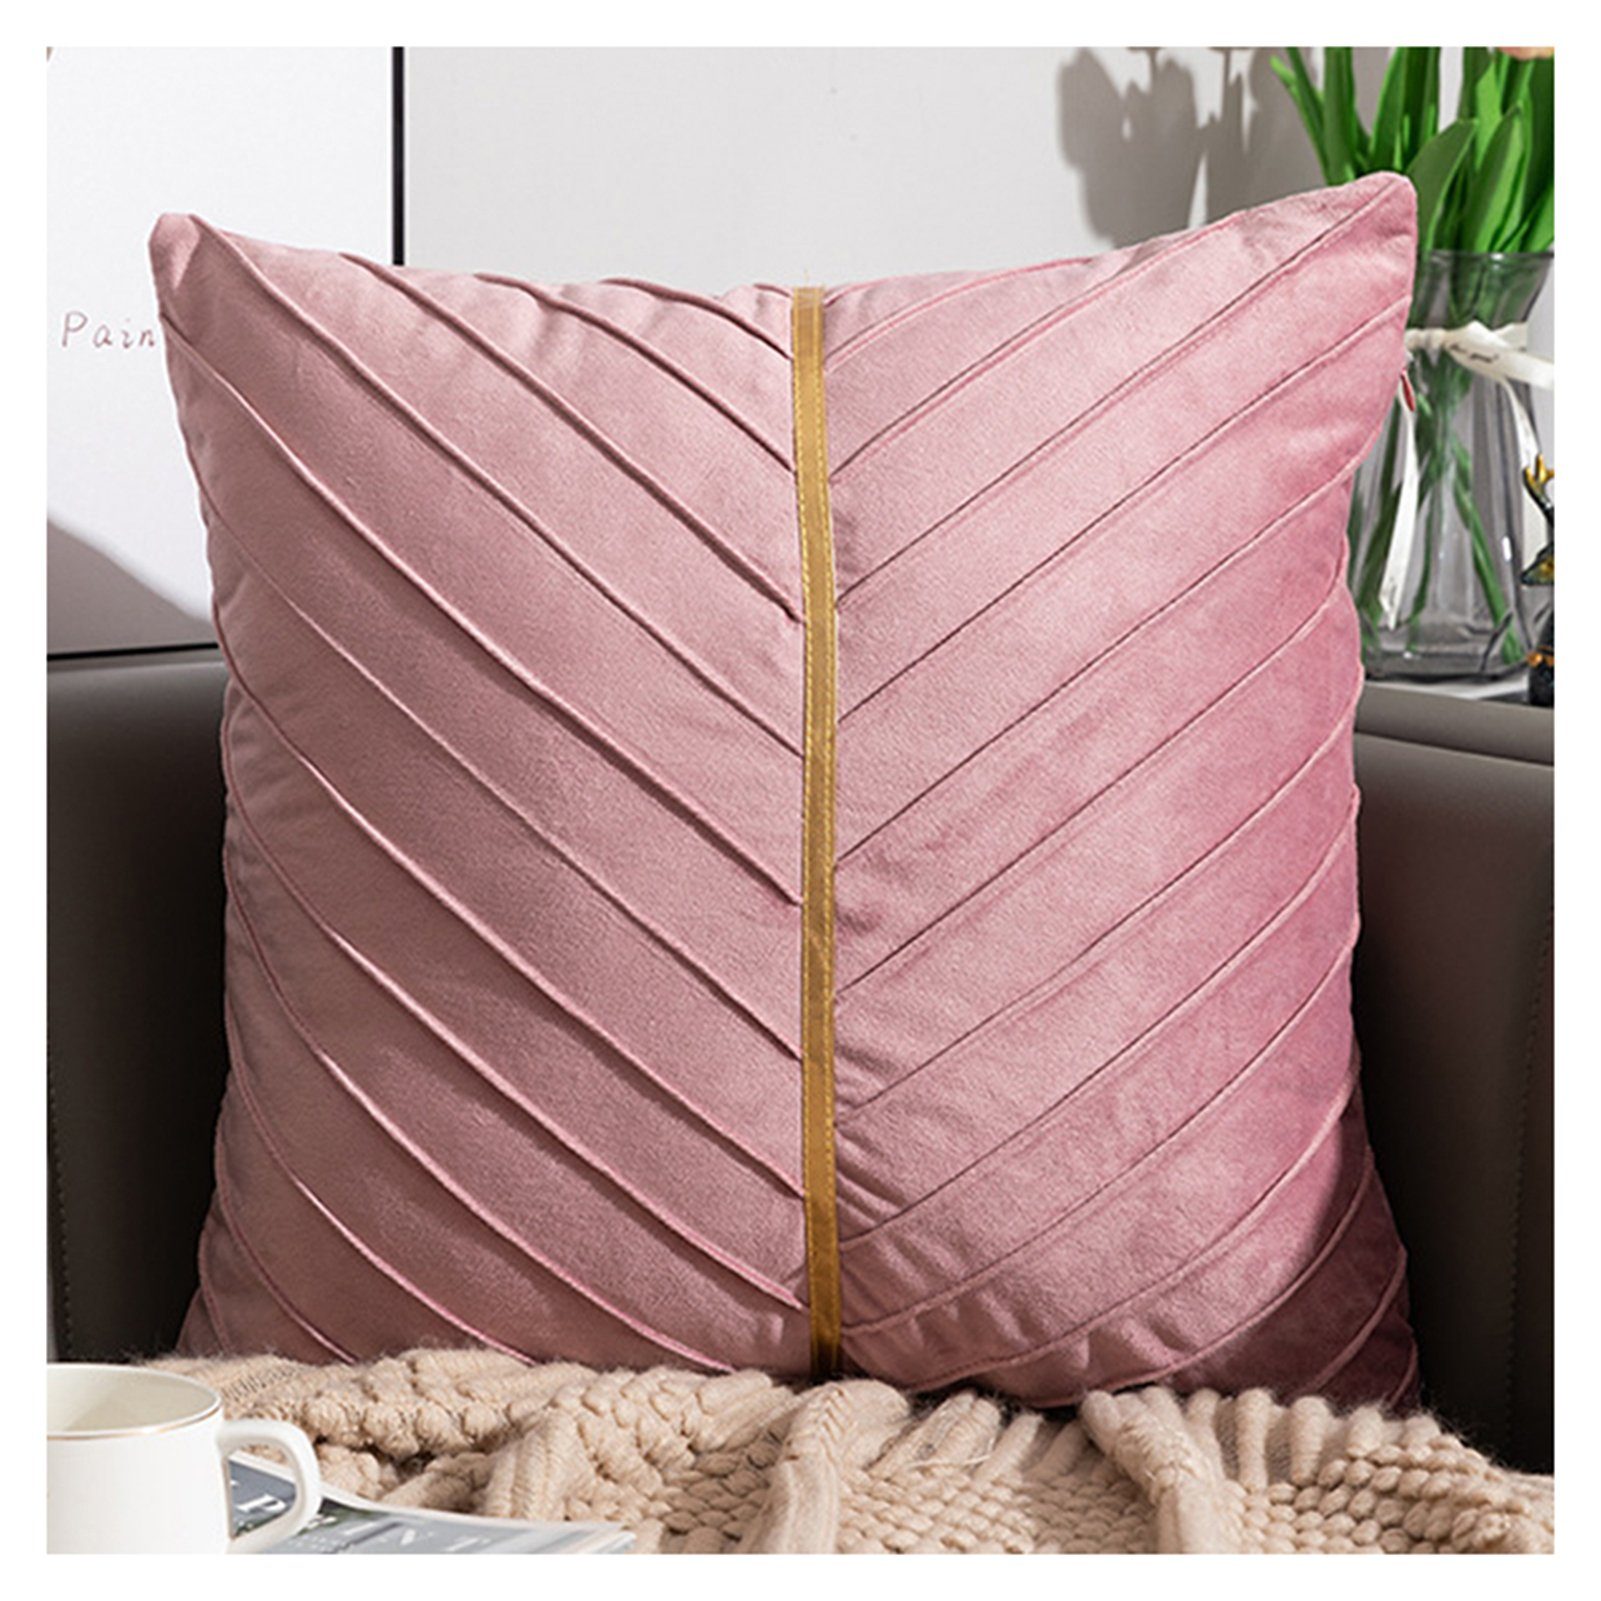 das Anschmiegsamer im Wohnzimmer Sofa pink Blusmart, Für Kissenbezug, Samt-Kissenbezug, Hautfreundlicher, Kissenbezug